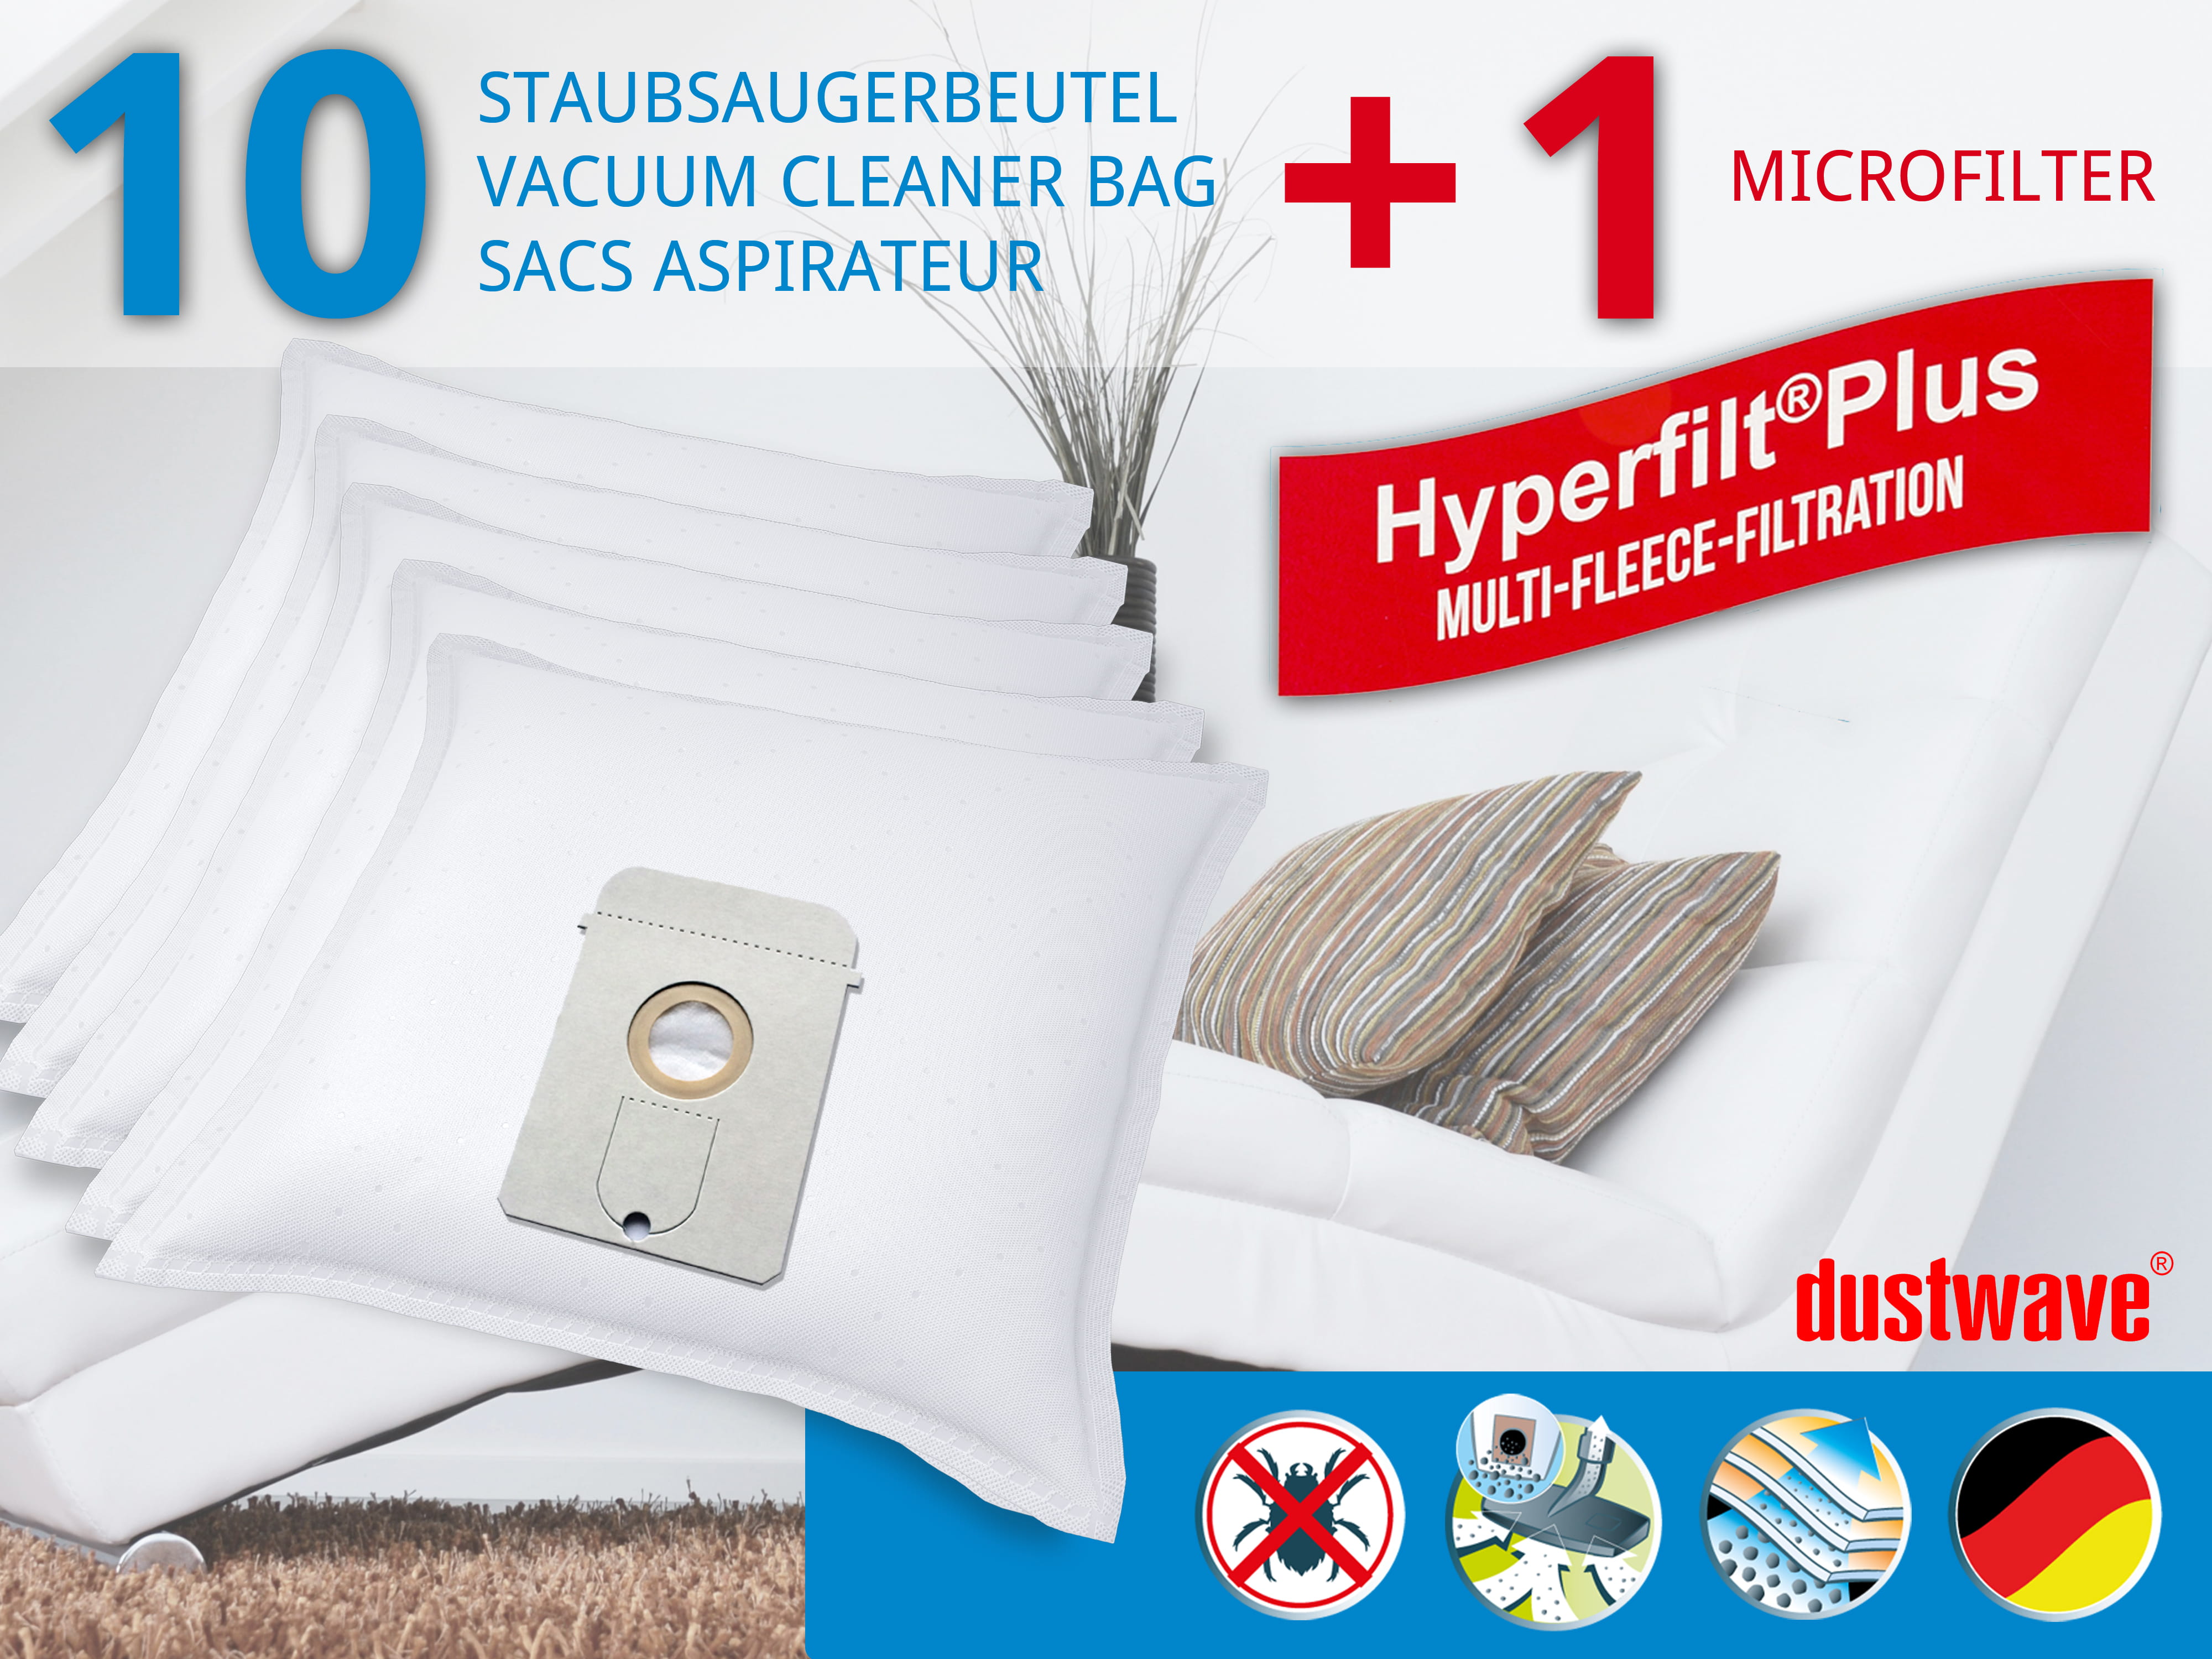 Dustwave® 10 Staubsaugerbeutel für AEG Vampyr TC Edition - hocheffizient, mehrlagiges Mikrovlies mit Hygieneverschluss - Made in Germany